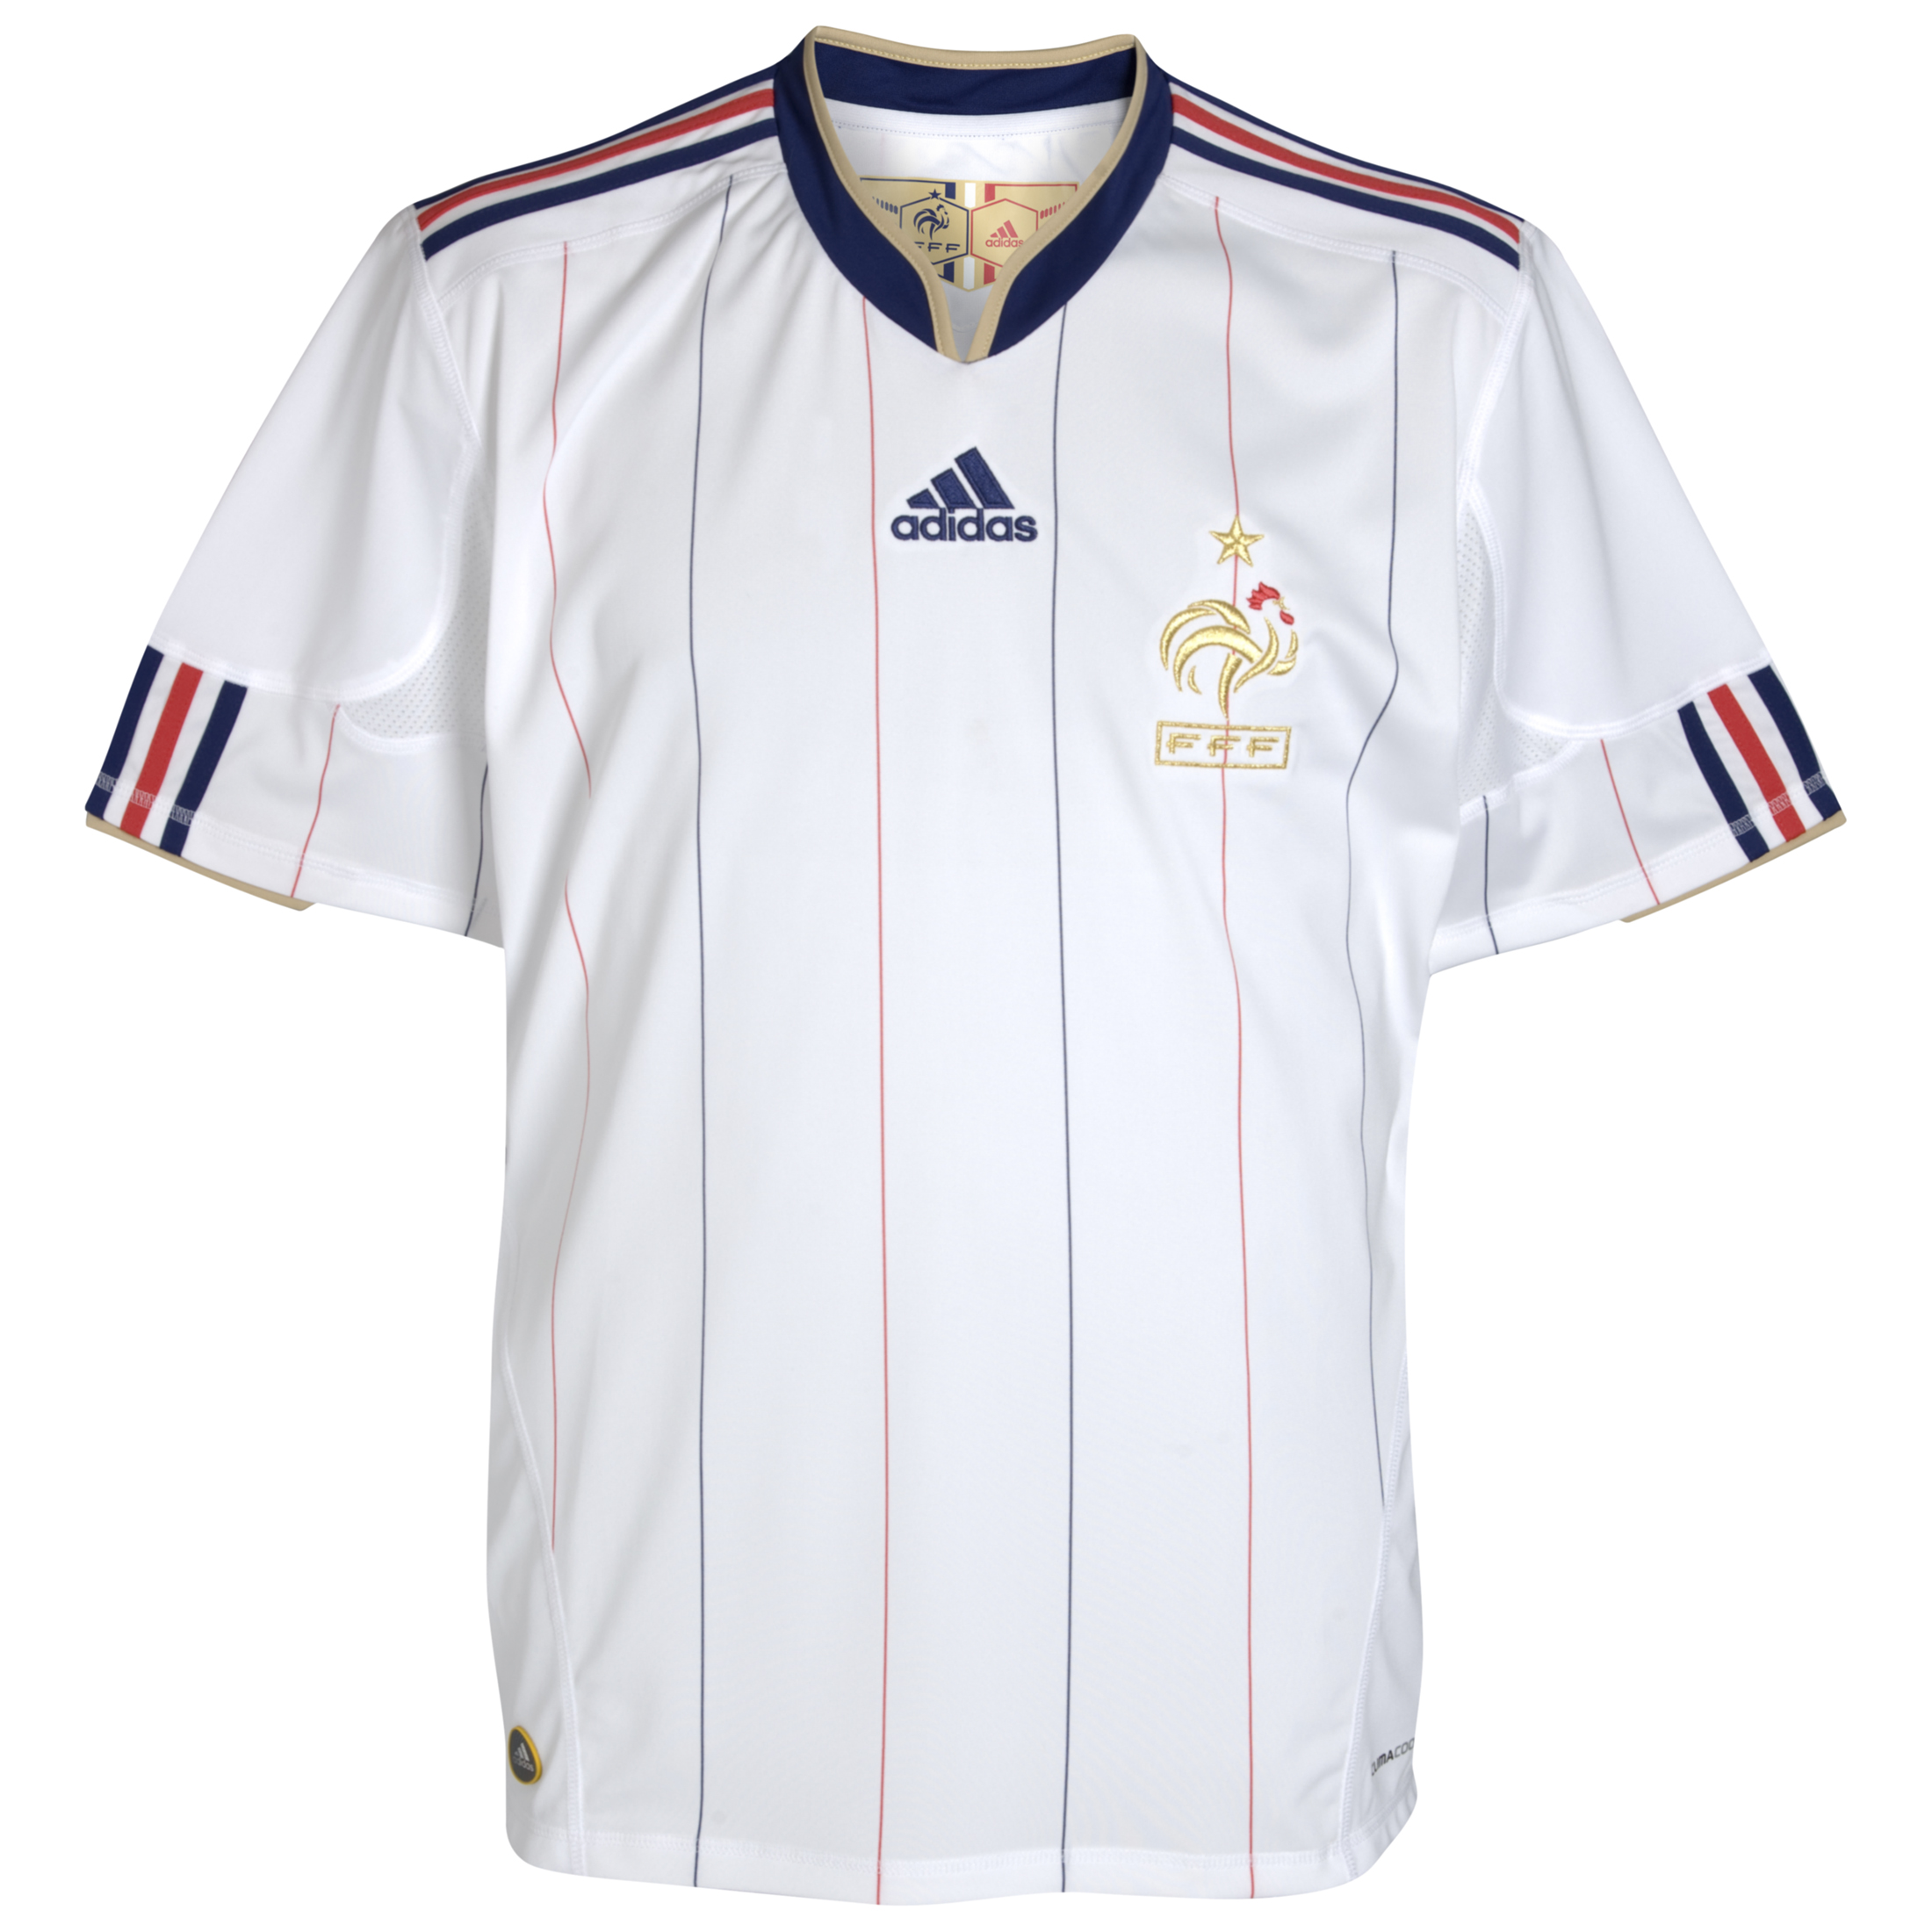 ملابس المنتخبات لكأس العالم2010م Kb-66928